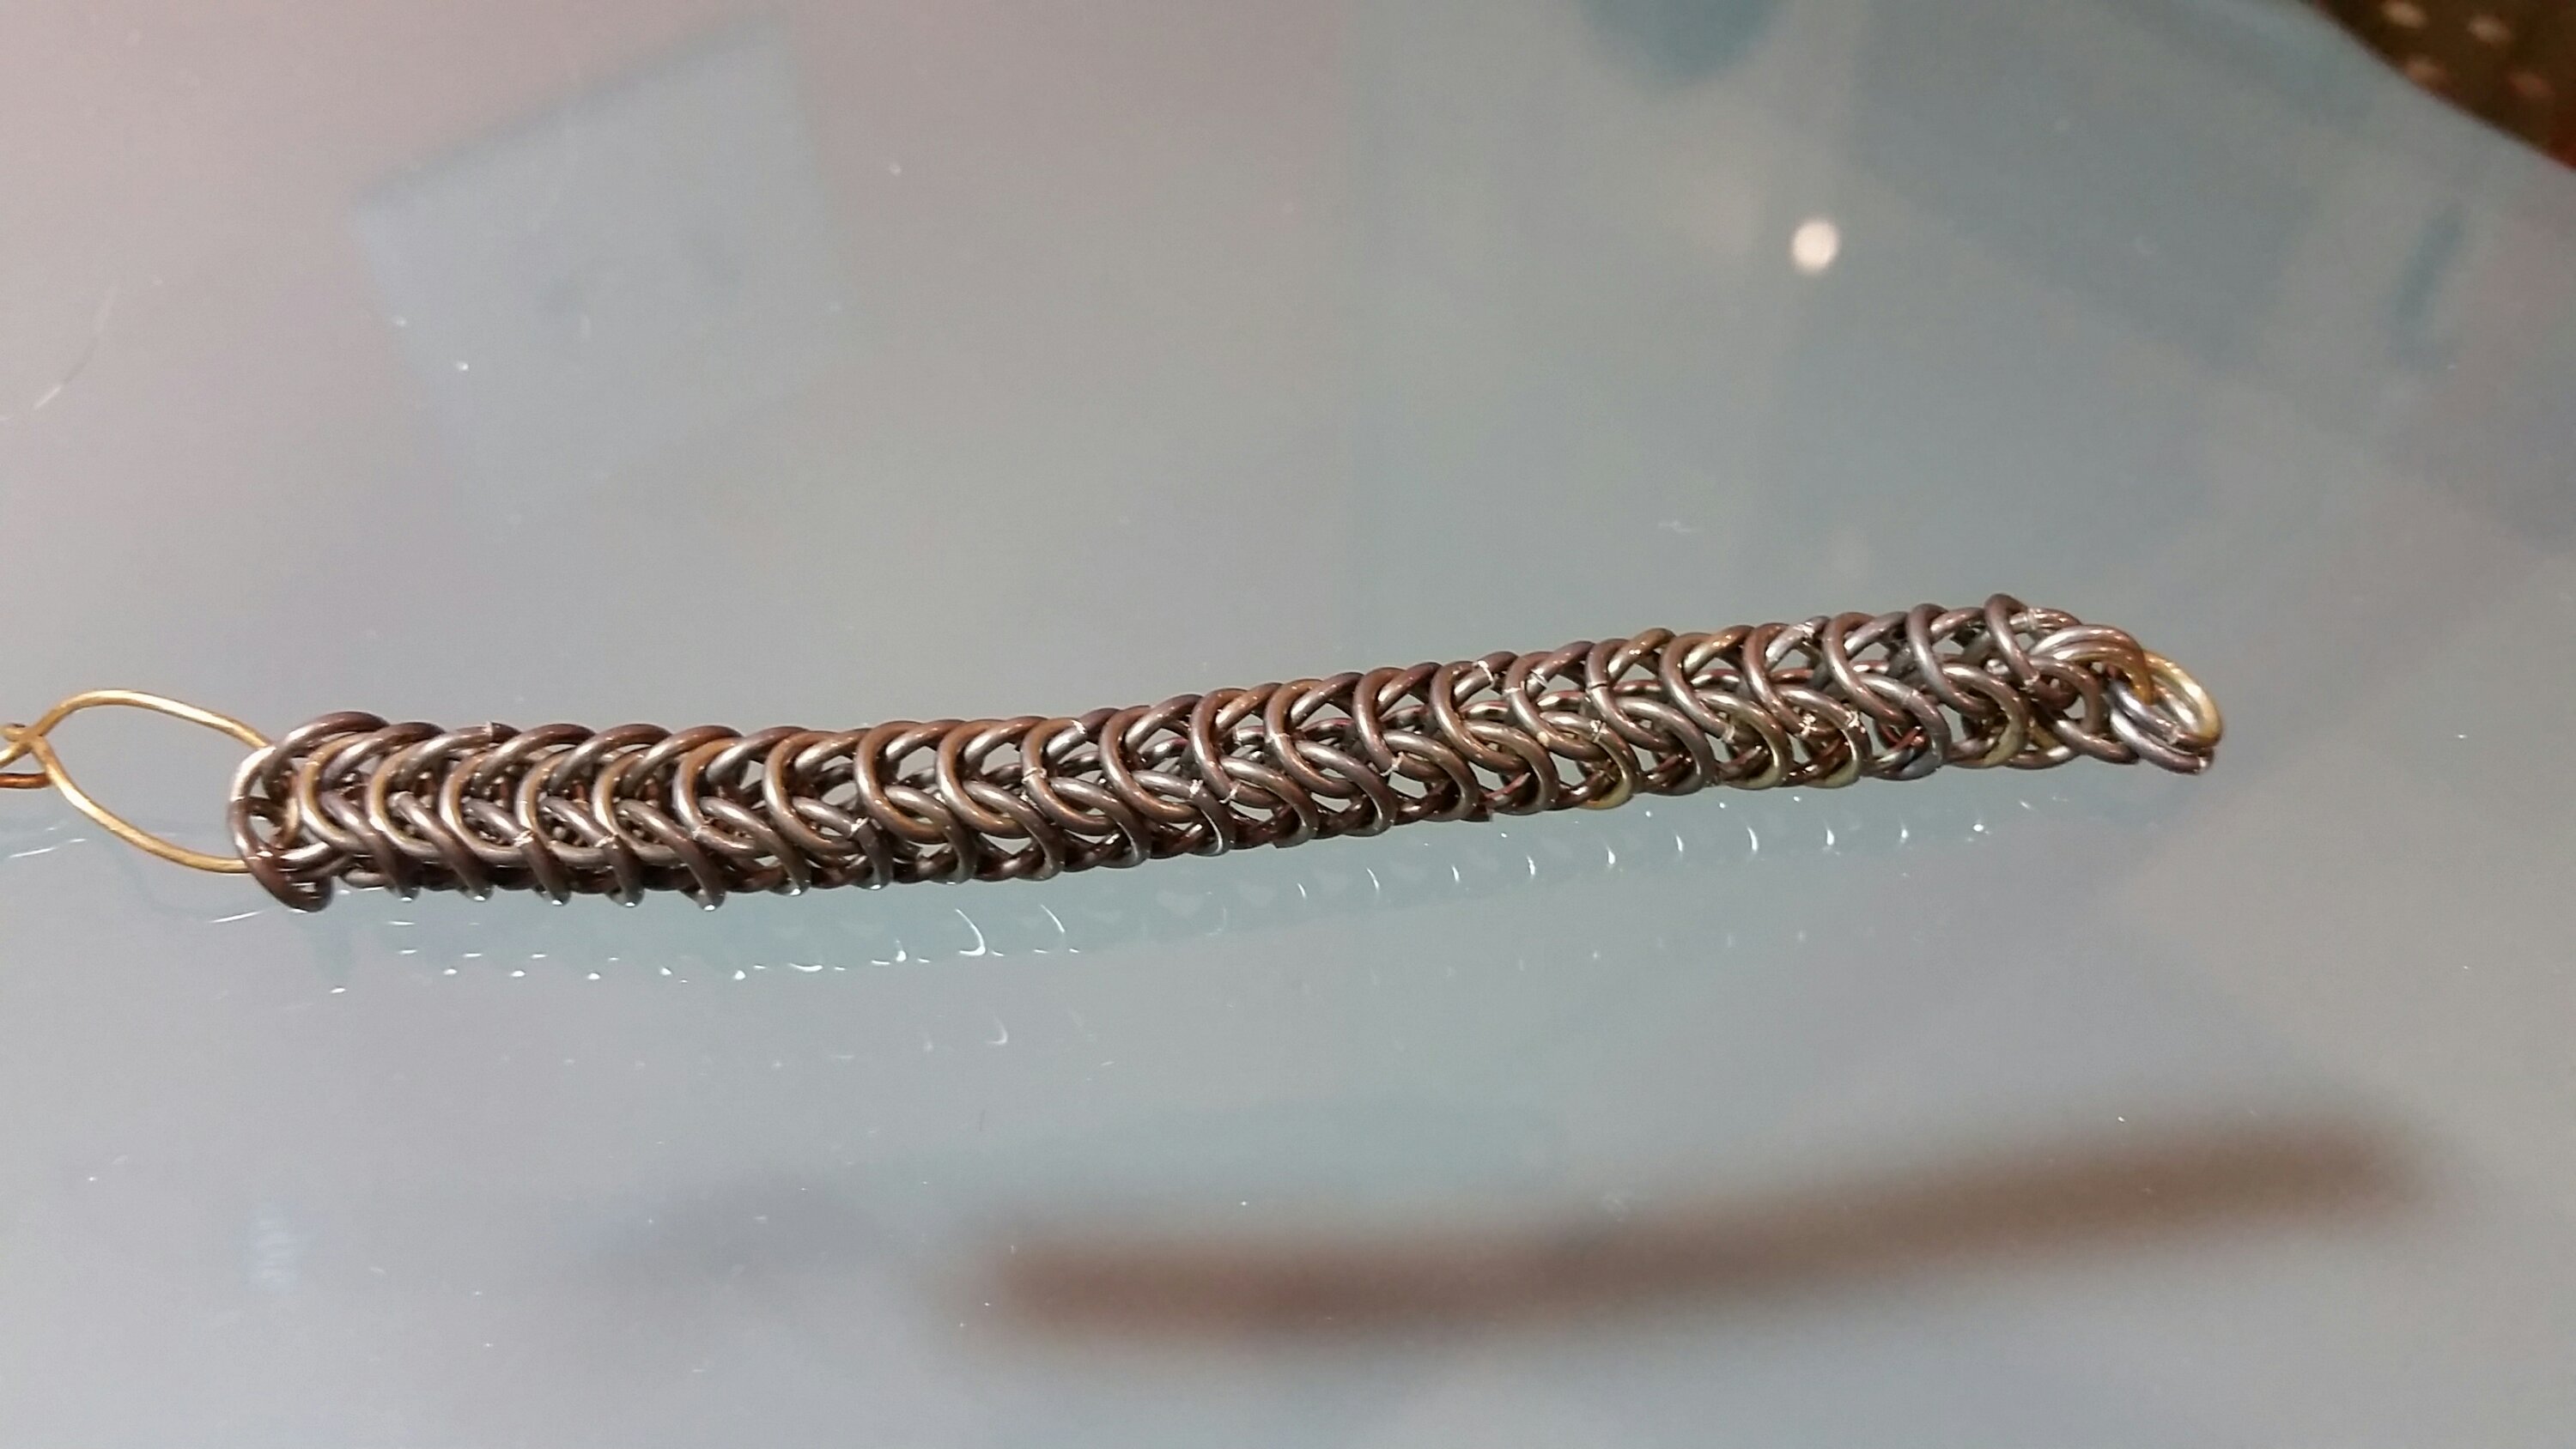 Foxtail bracelet in progress